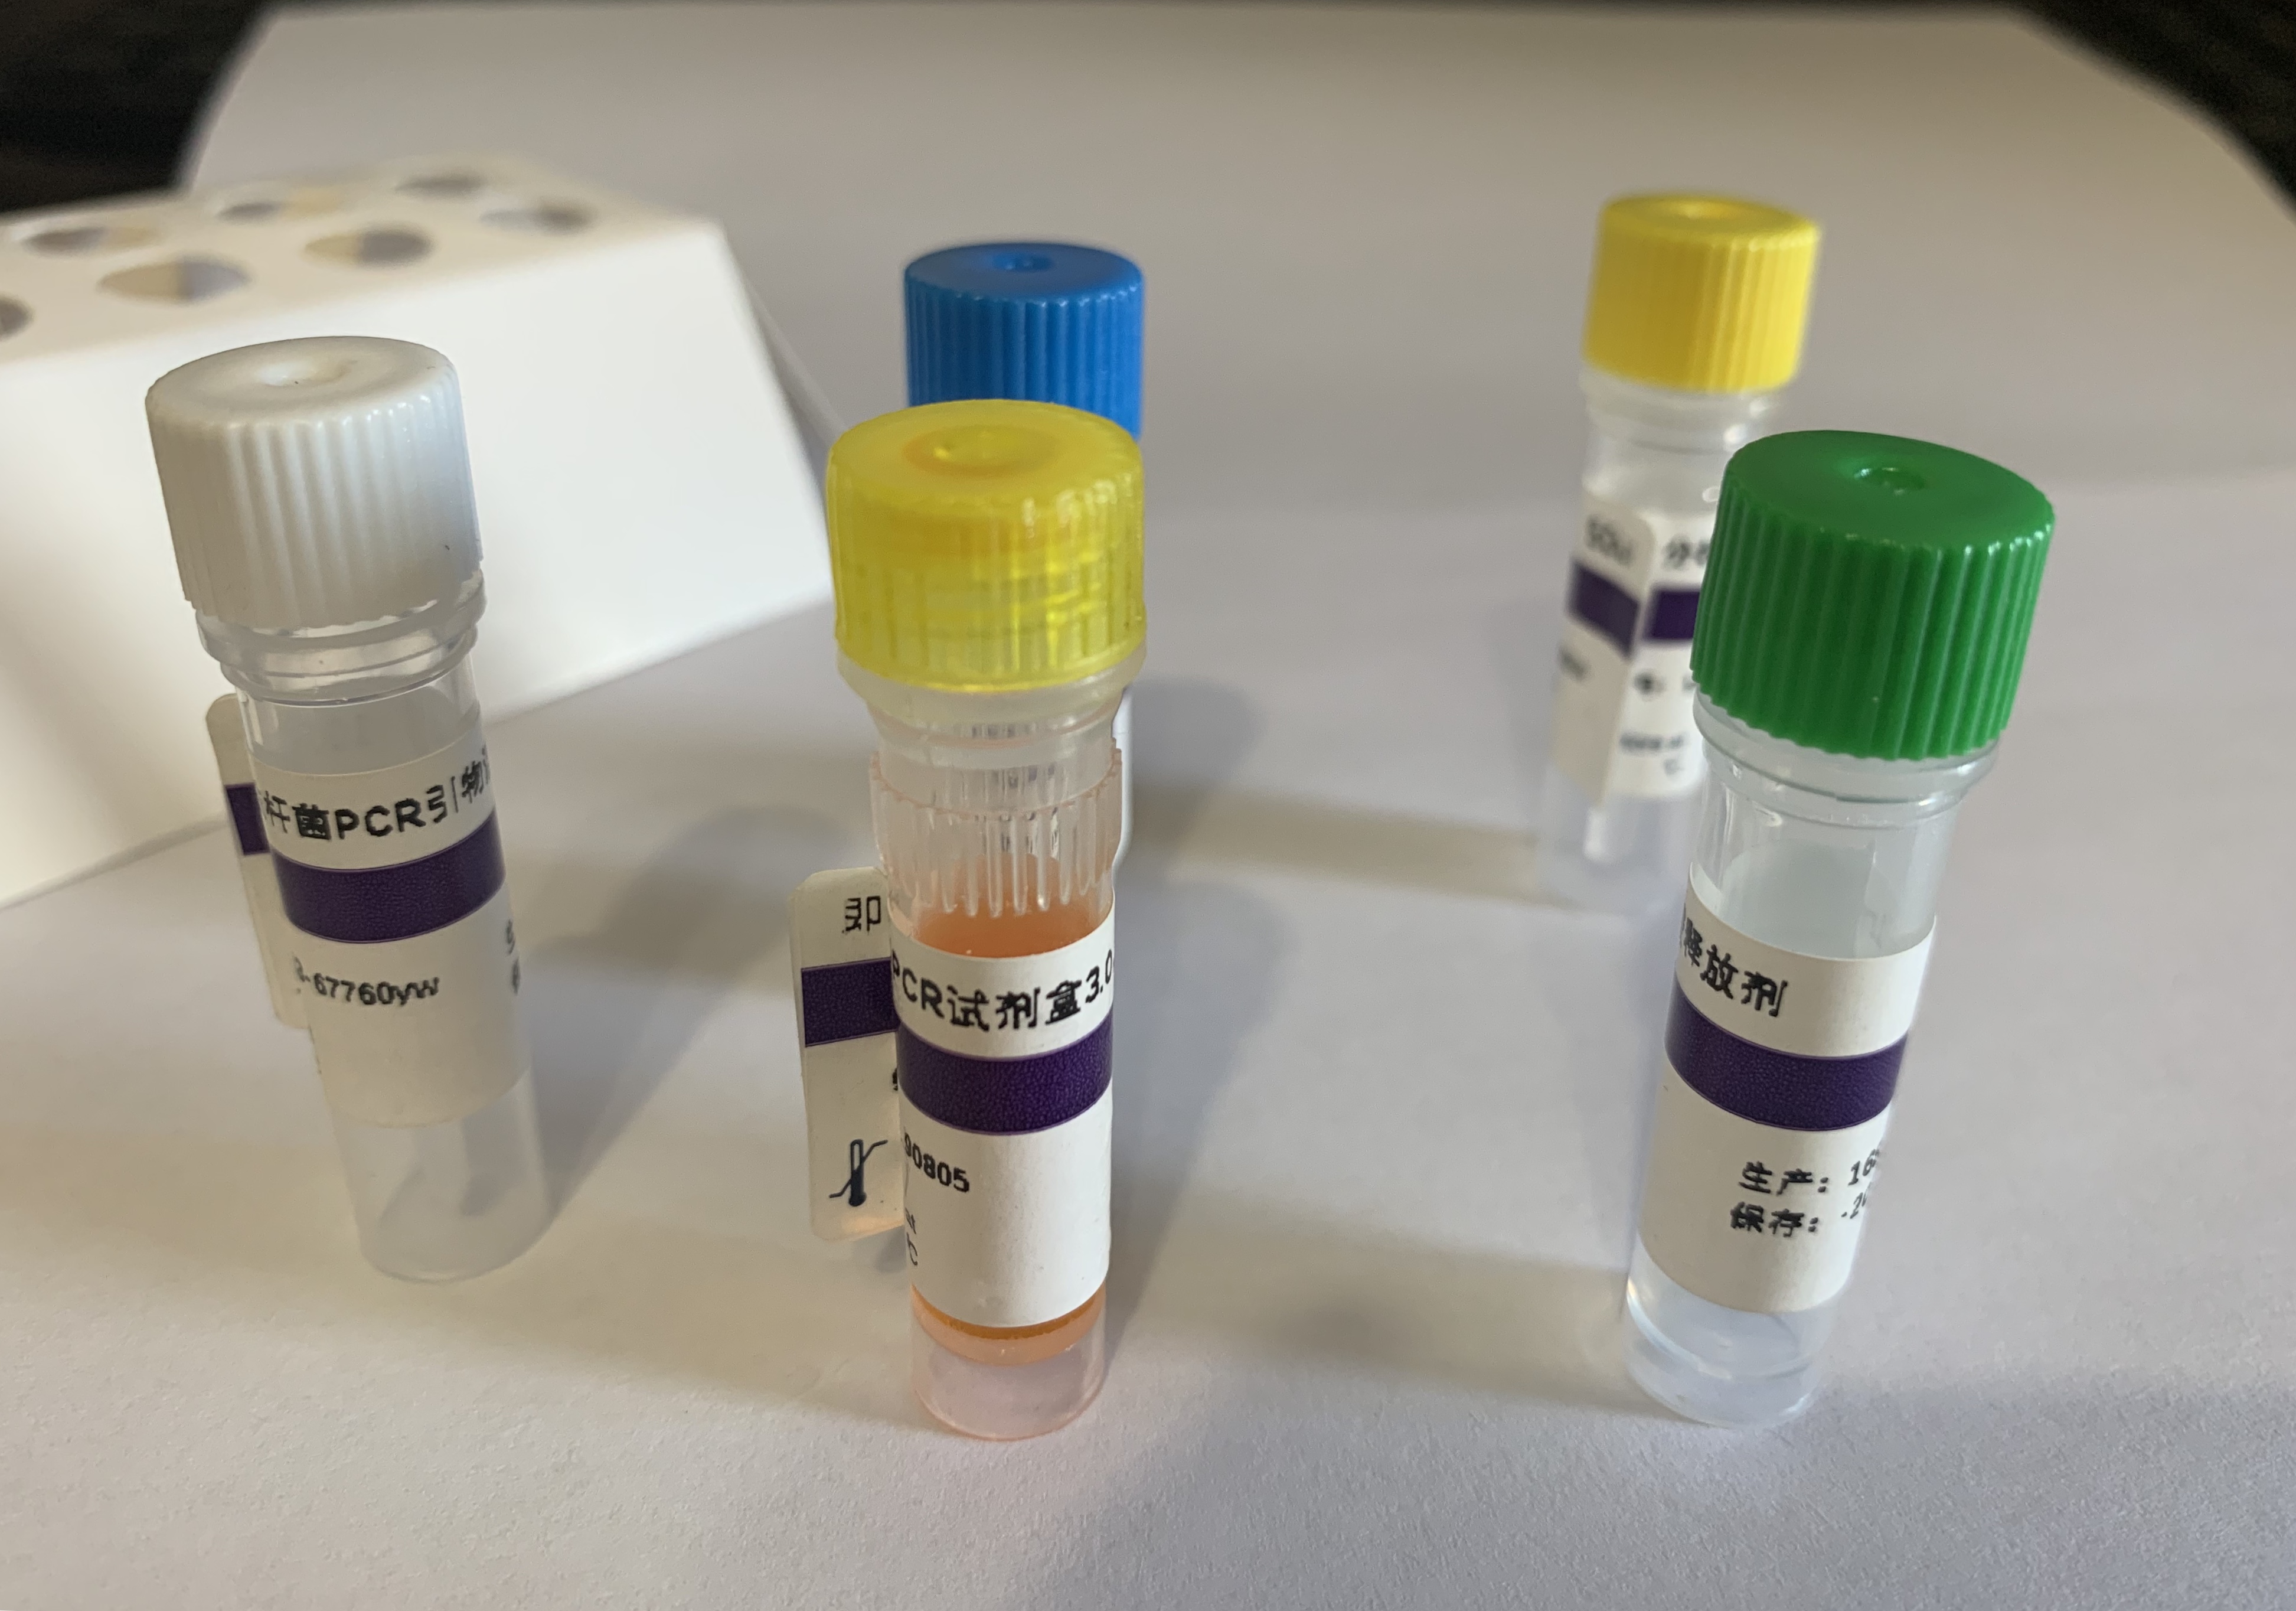 猪蓝耳病毒染料法荧光定量RT-PCR试剂盒